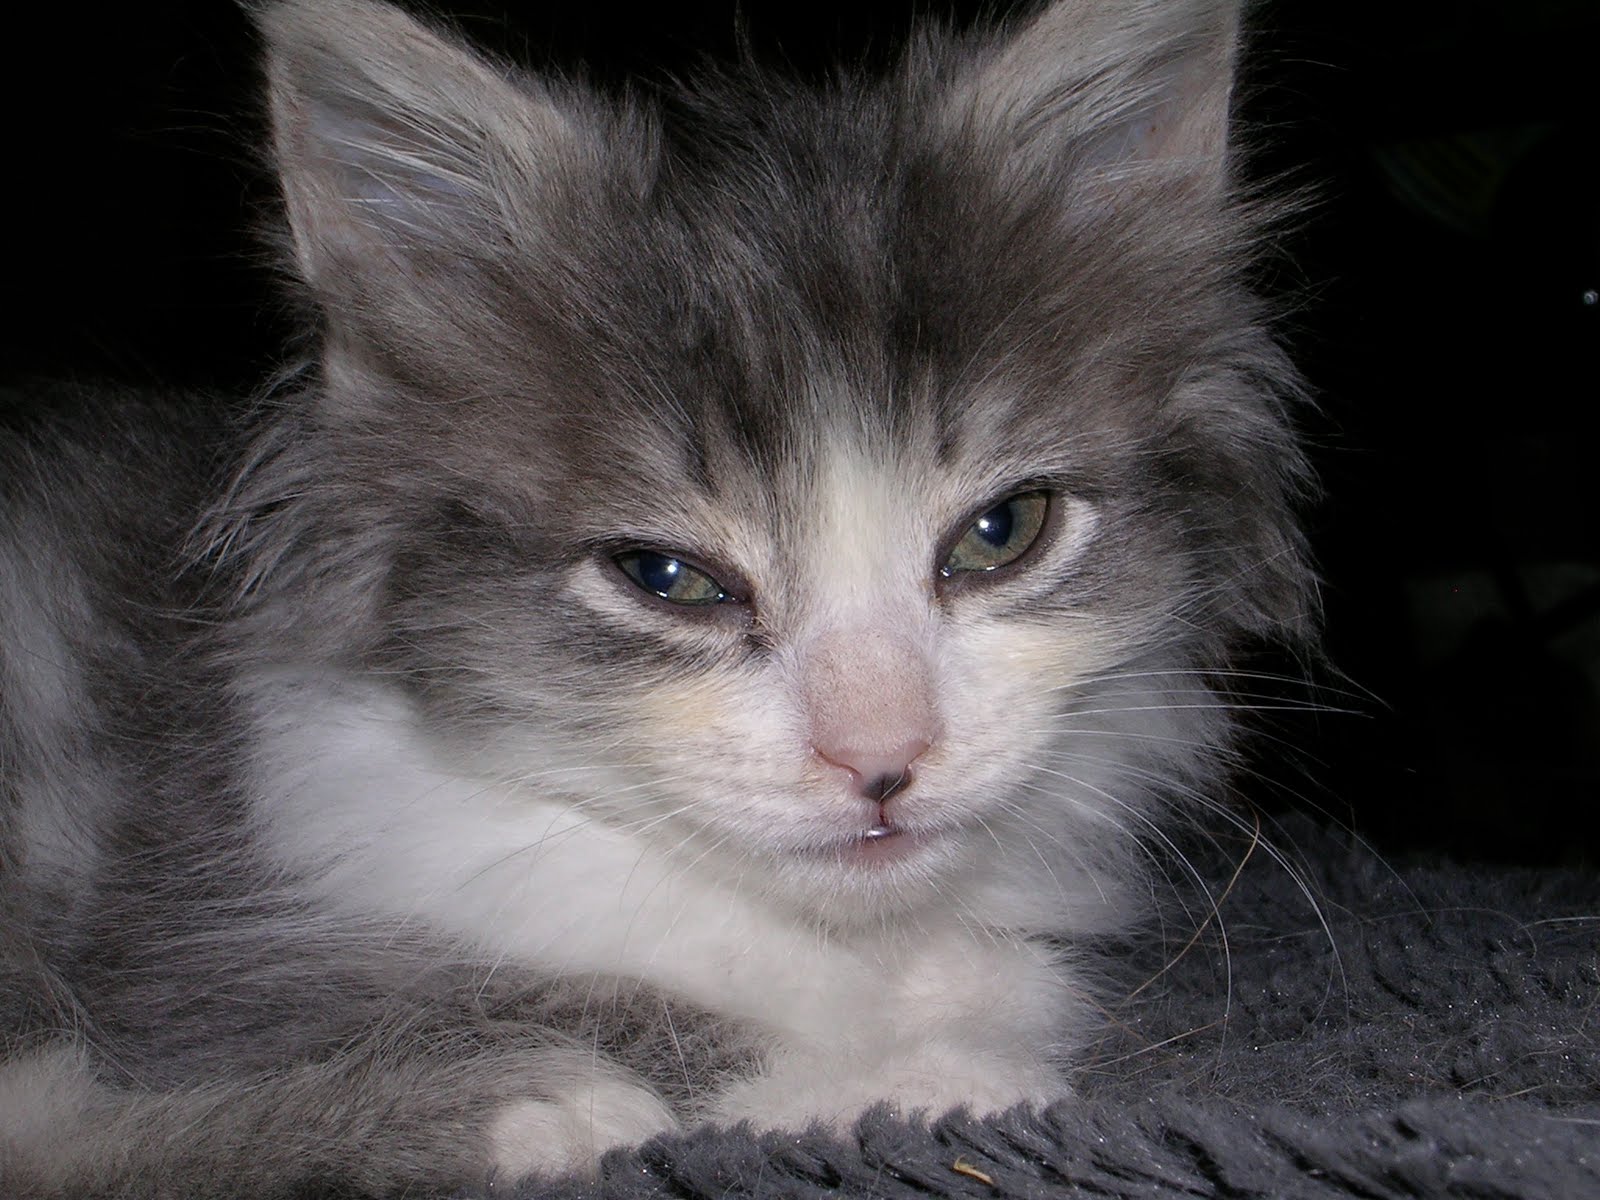 Toronto Adopt A Pet Kittens!